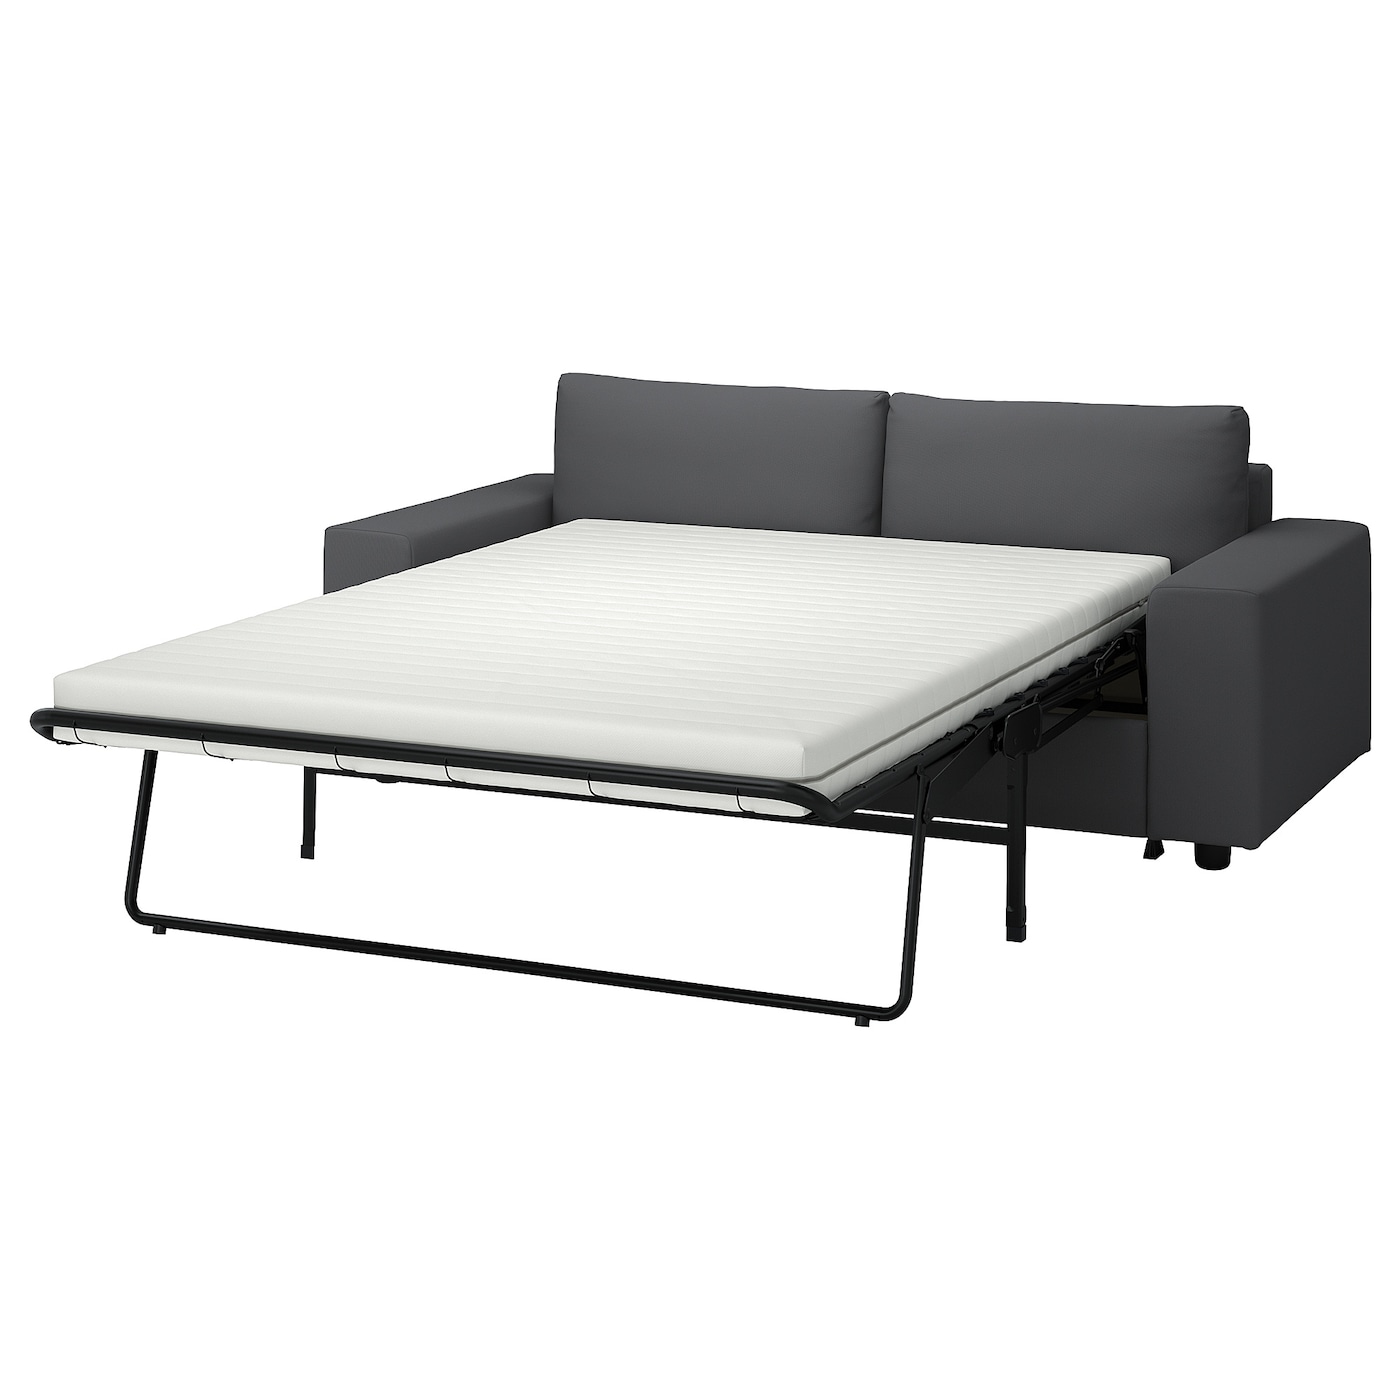 2-местный диван - IKEA VIMLE, 98x204см, темно-серый, ВИМЛЕ ИКЕА